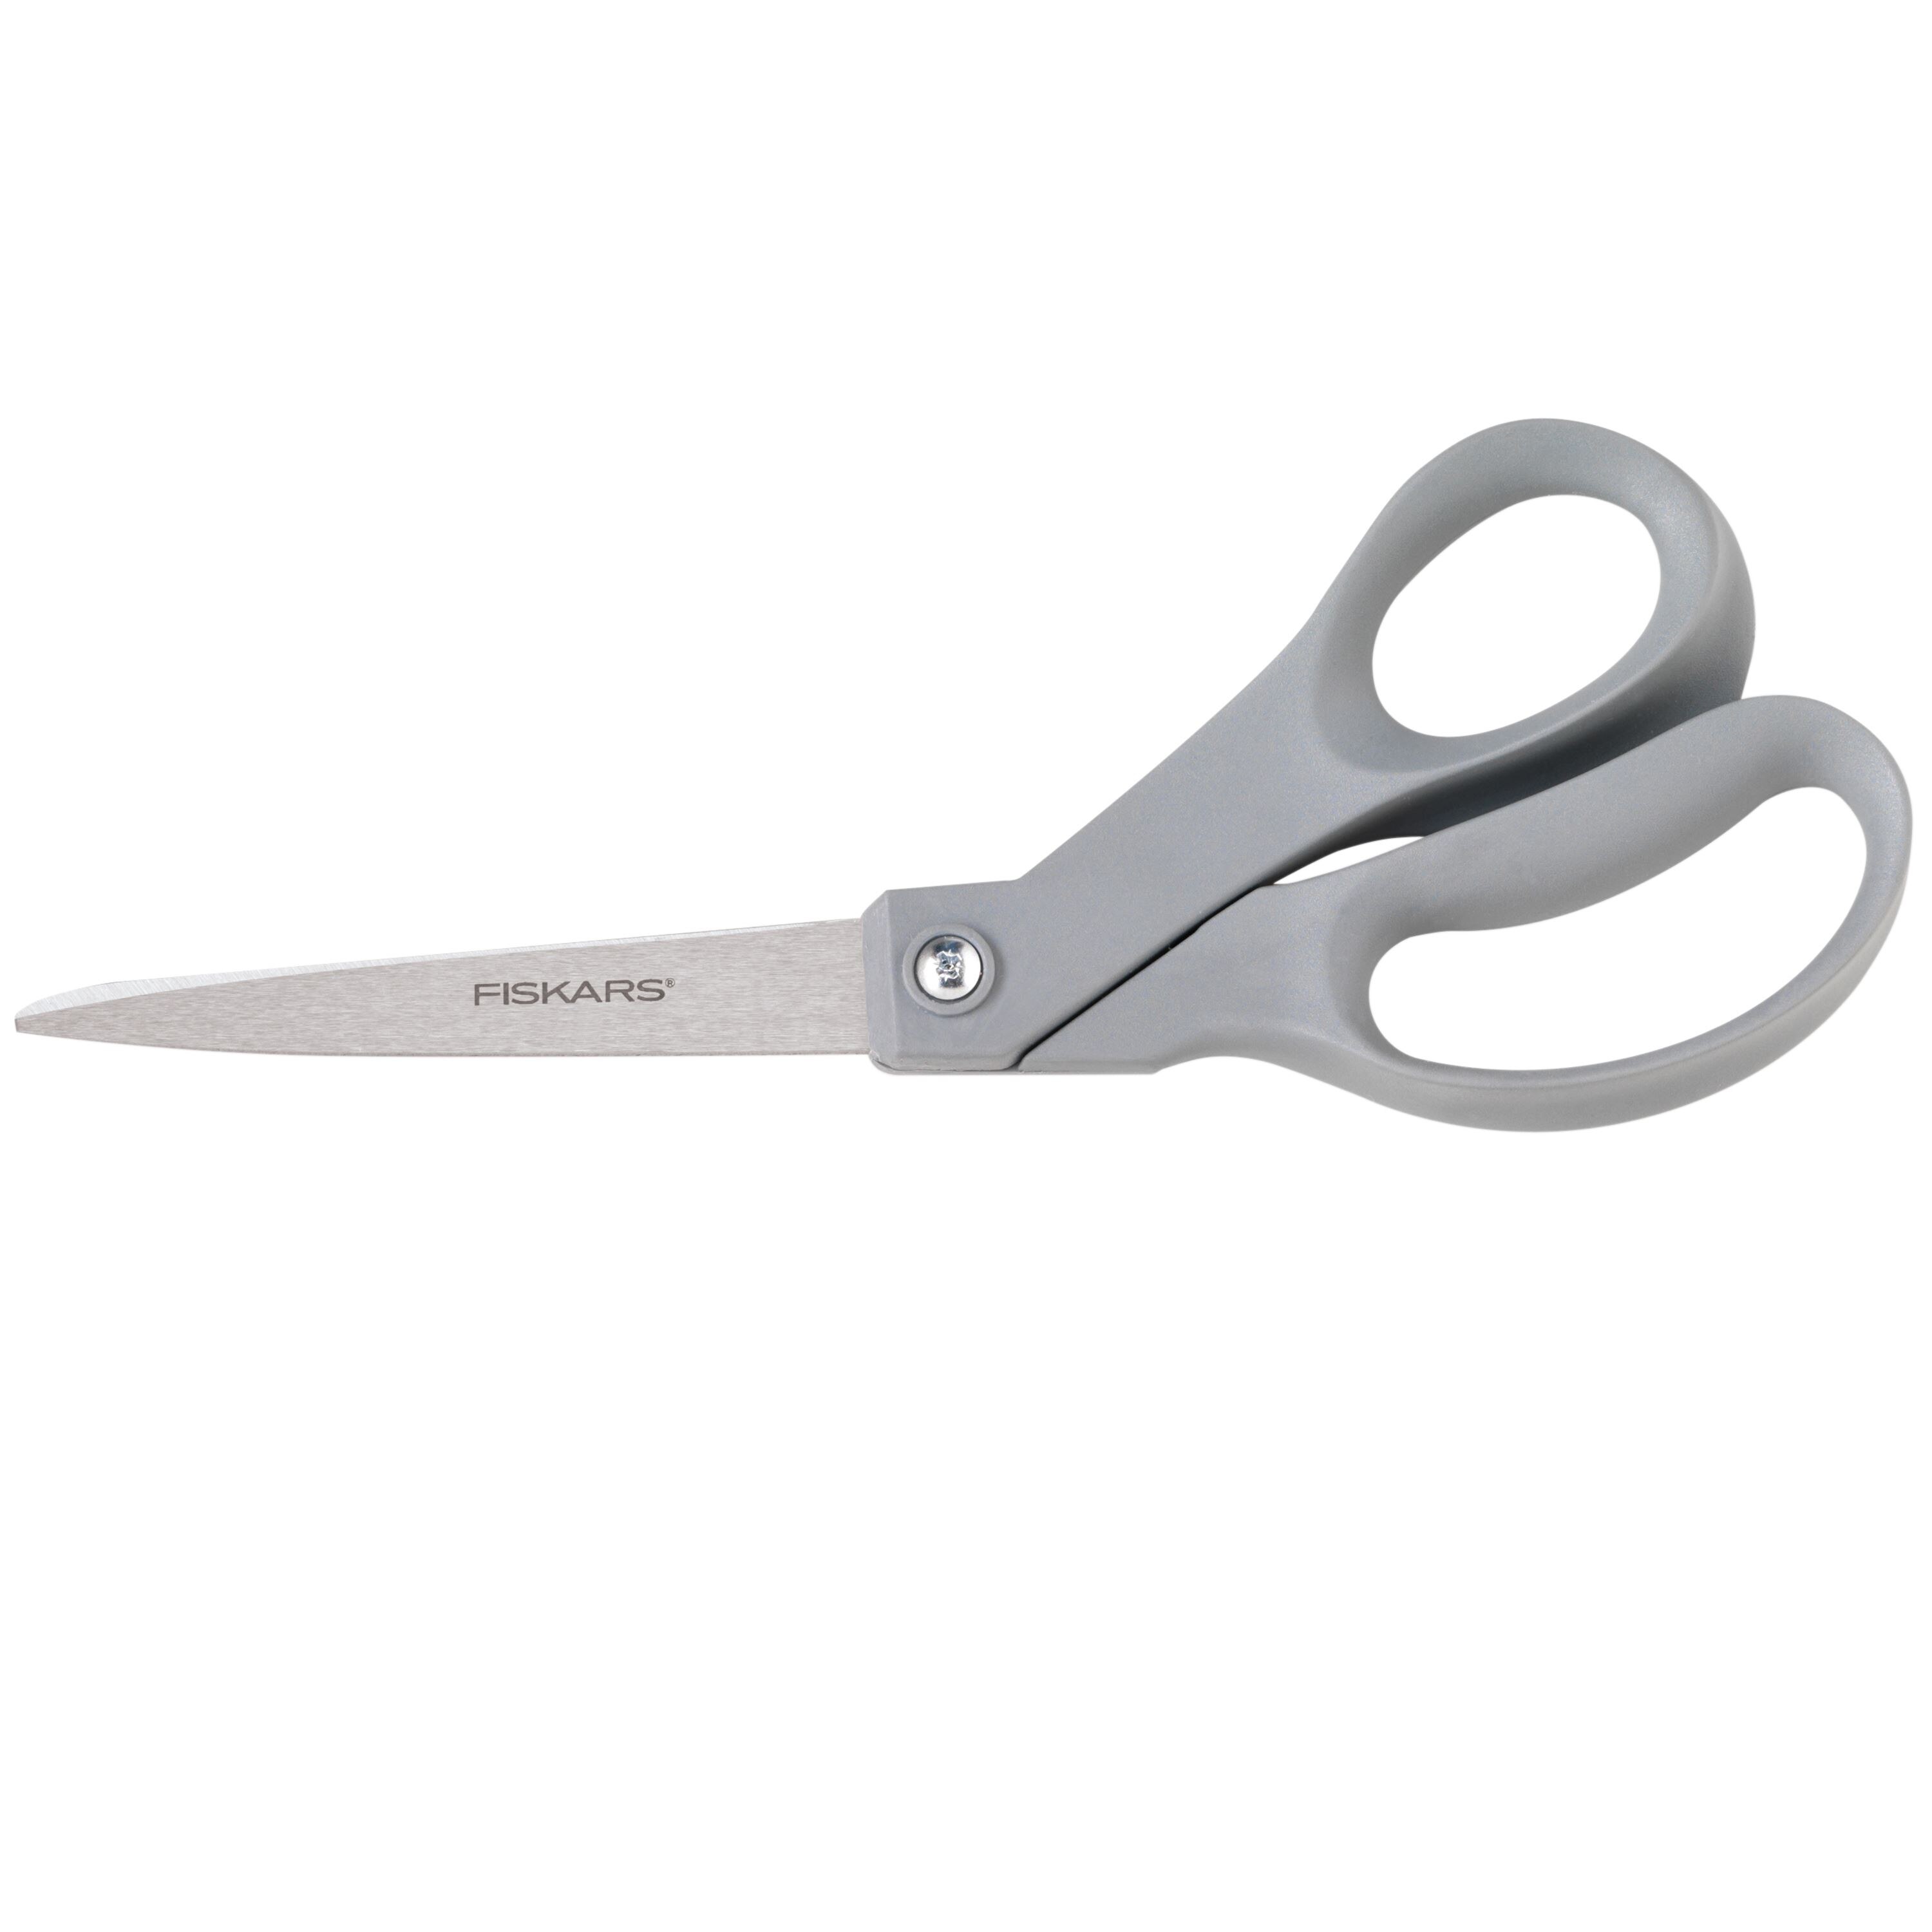 Fiskars® Finnish Seamstress Scissors